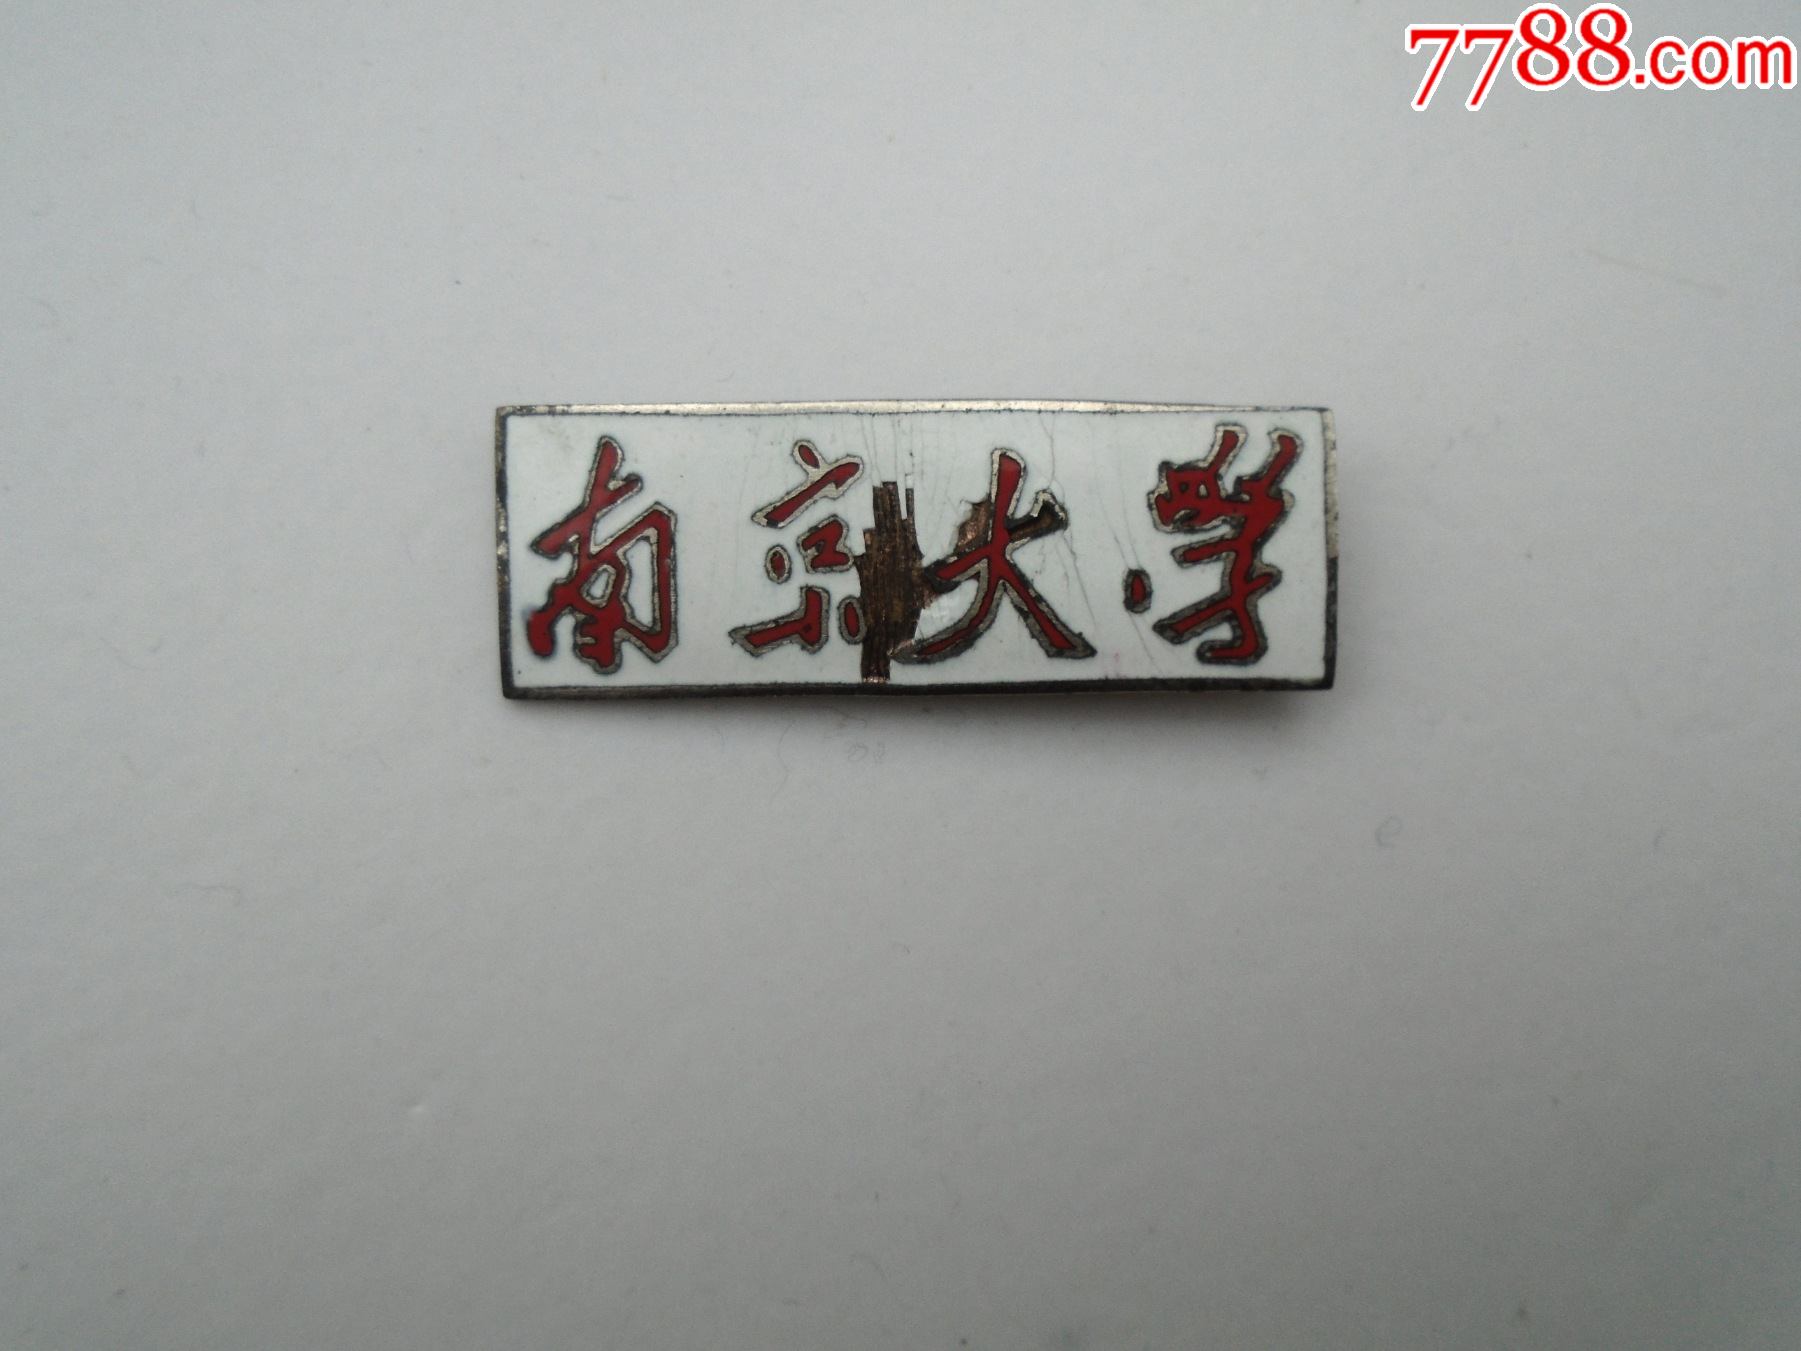 南京大学早期老校徽,包真包老.尺寸:3.9*1.3厘米.材质